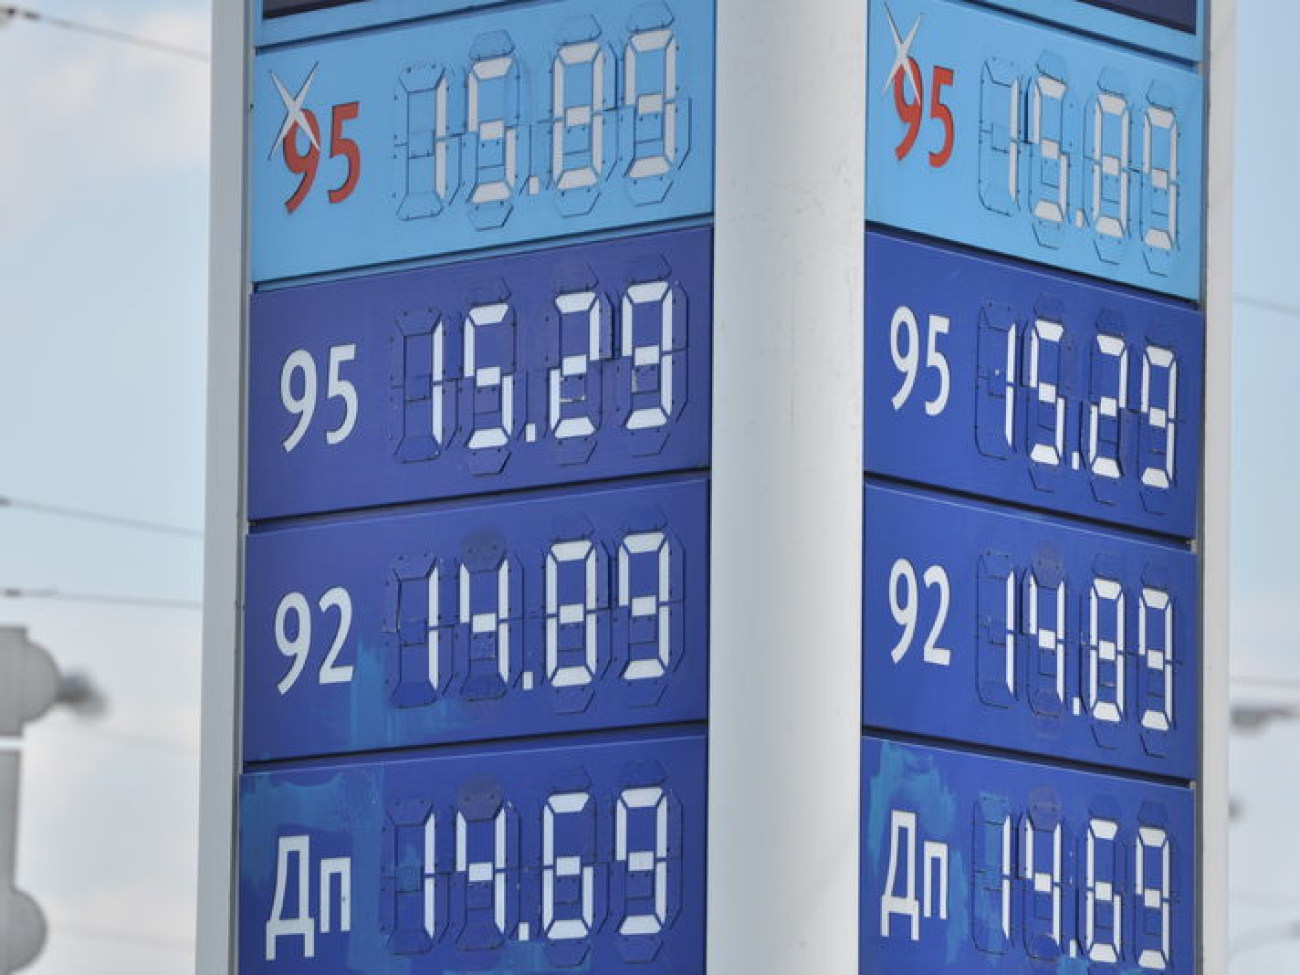 Высокая цена бензина отпугнула автомобилистов